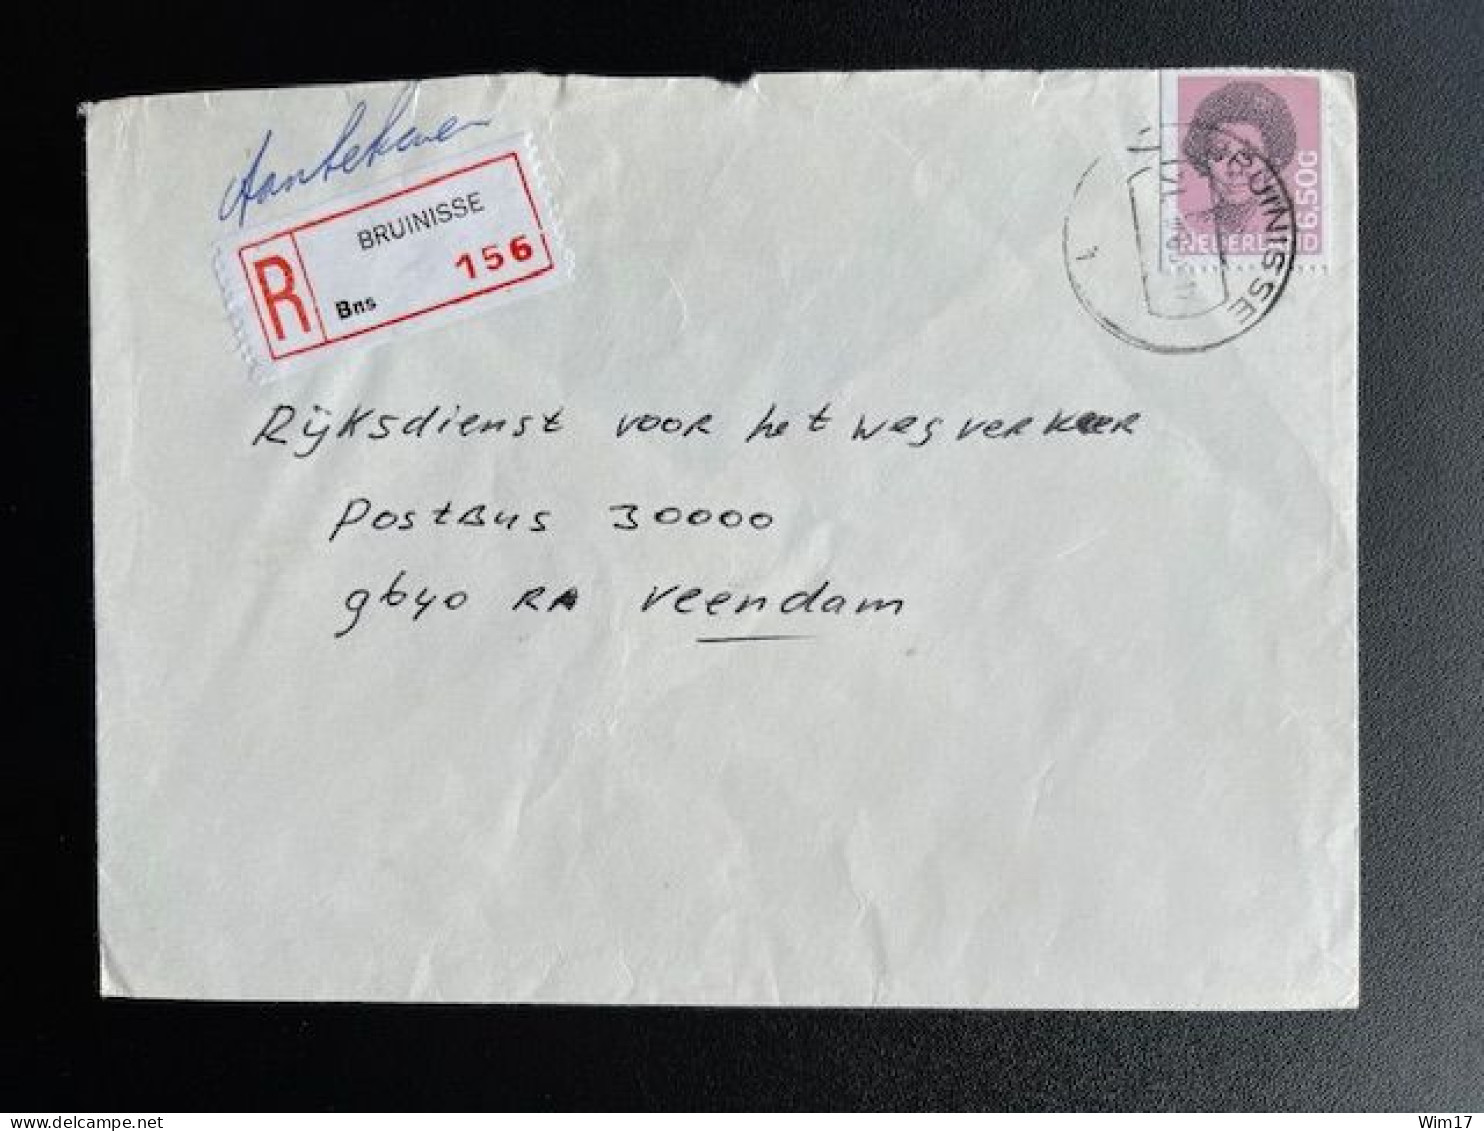 NETHERLANDS 1983 REGISTERED LETTER BRUINISSE TO VEENDAM 21-03-1983 NEDERLAND AANGETEKEND - Storia Postale